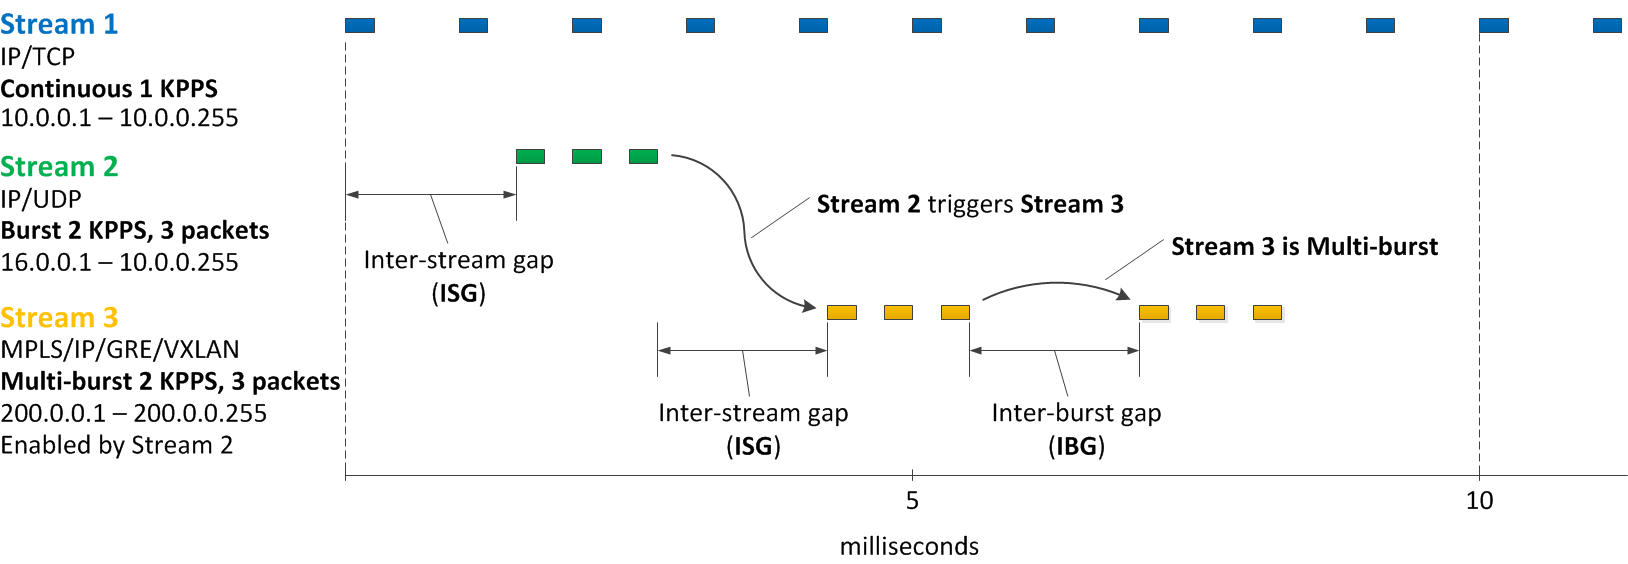 stl streams example 02